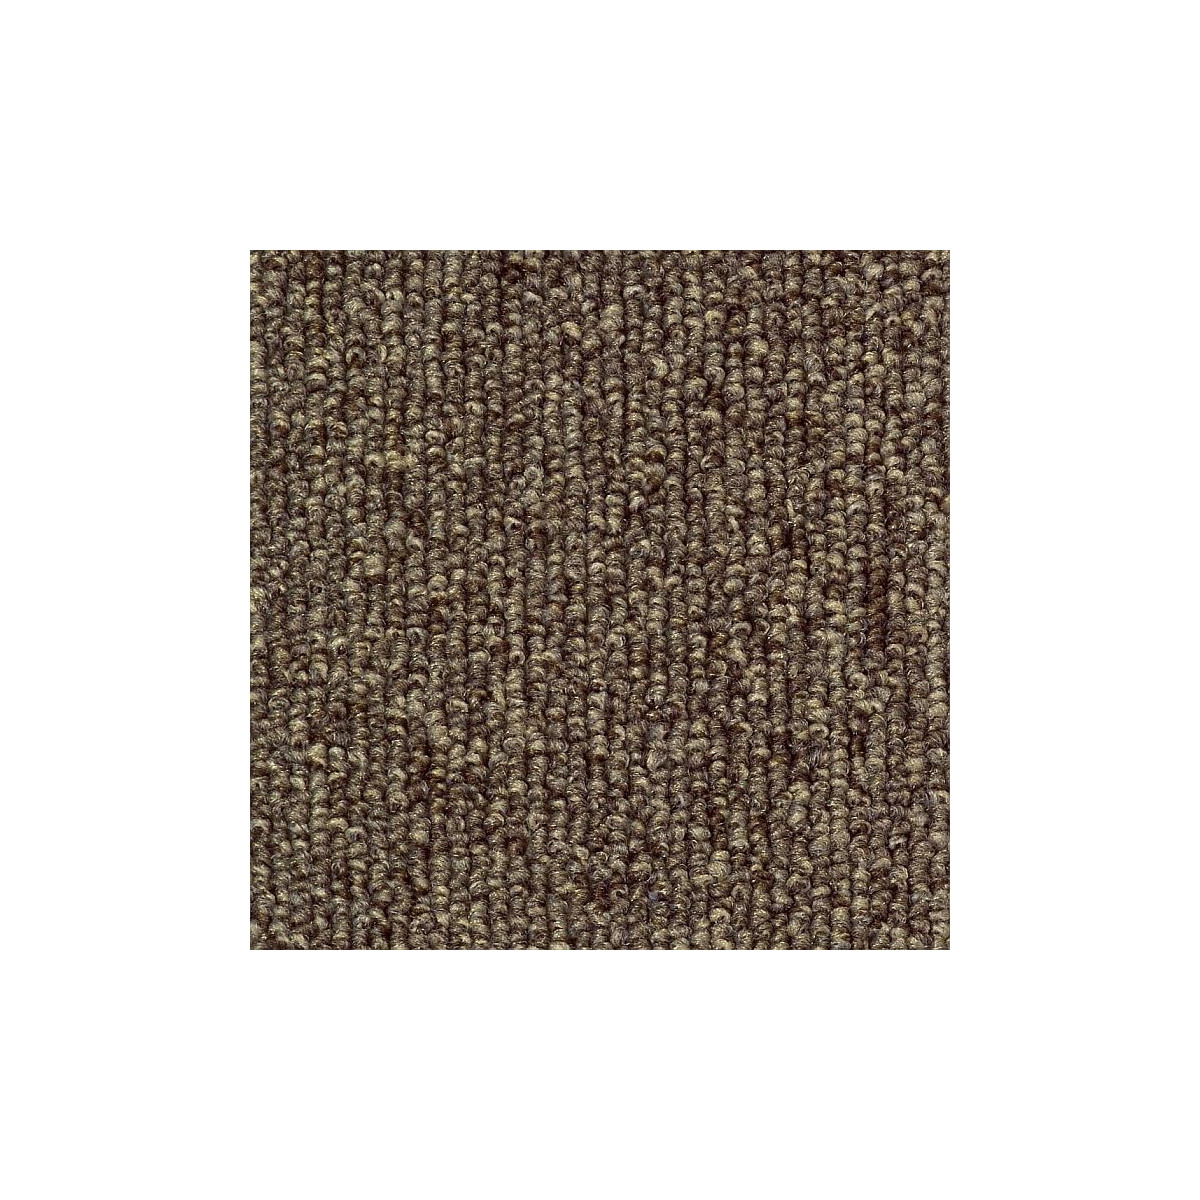 Metrážový koberec Esprit 7740, zátěžový